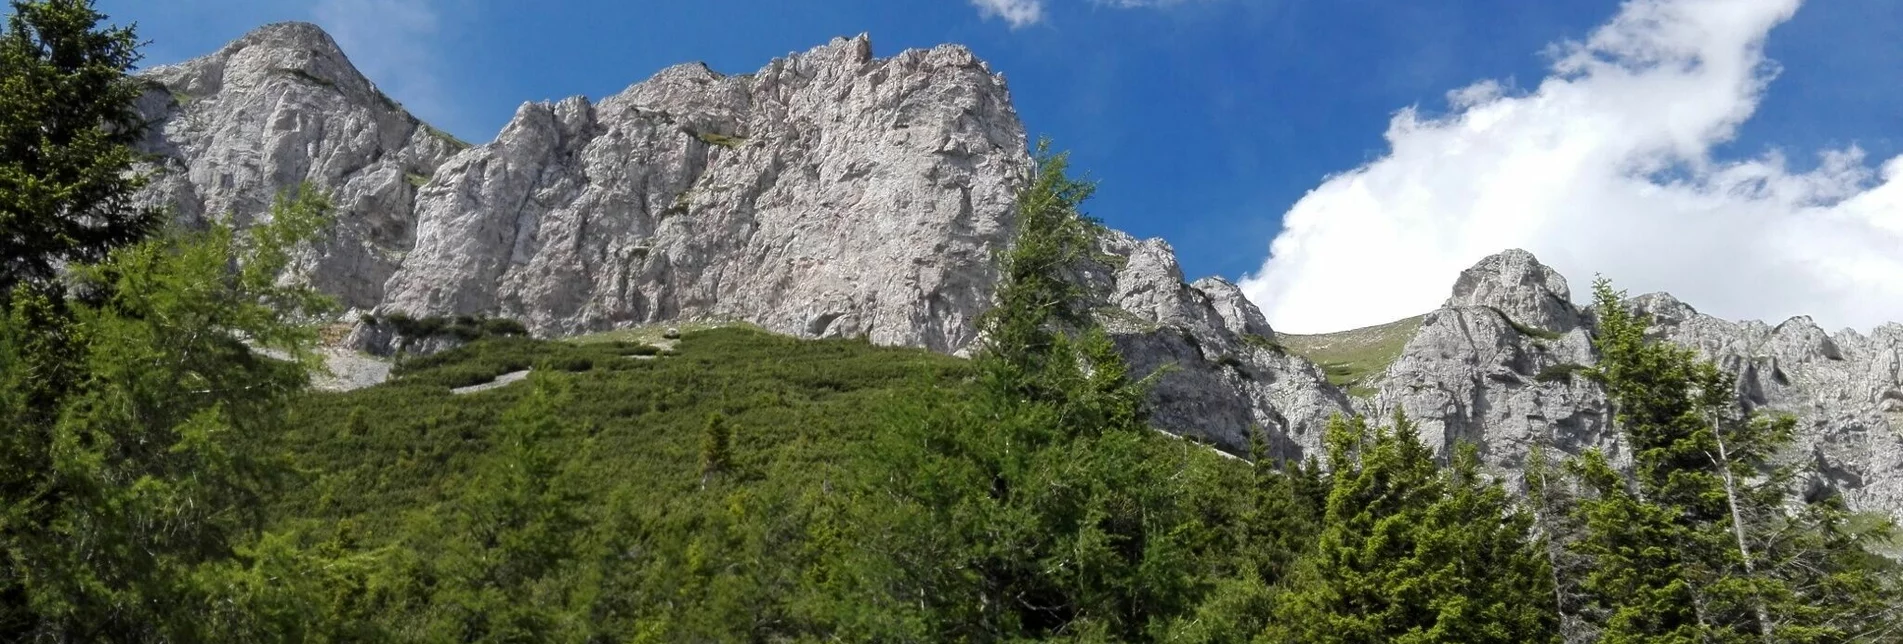 Bergtour Über den Fuchslochsteig auf die Rax im Naturpark Mürzer Oberland - Touren-Impression #1 | © TV Hochsteiermark